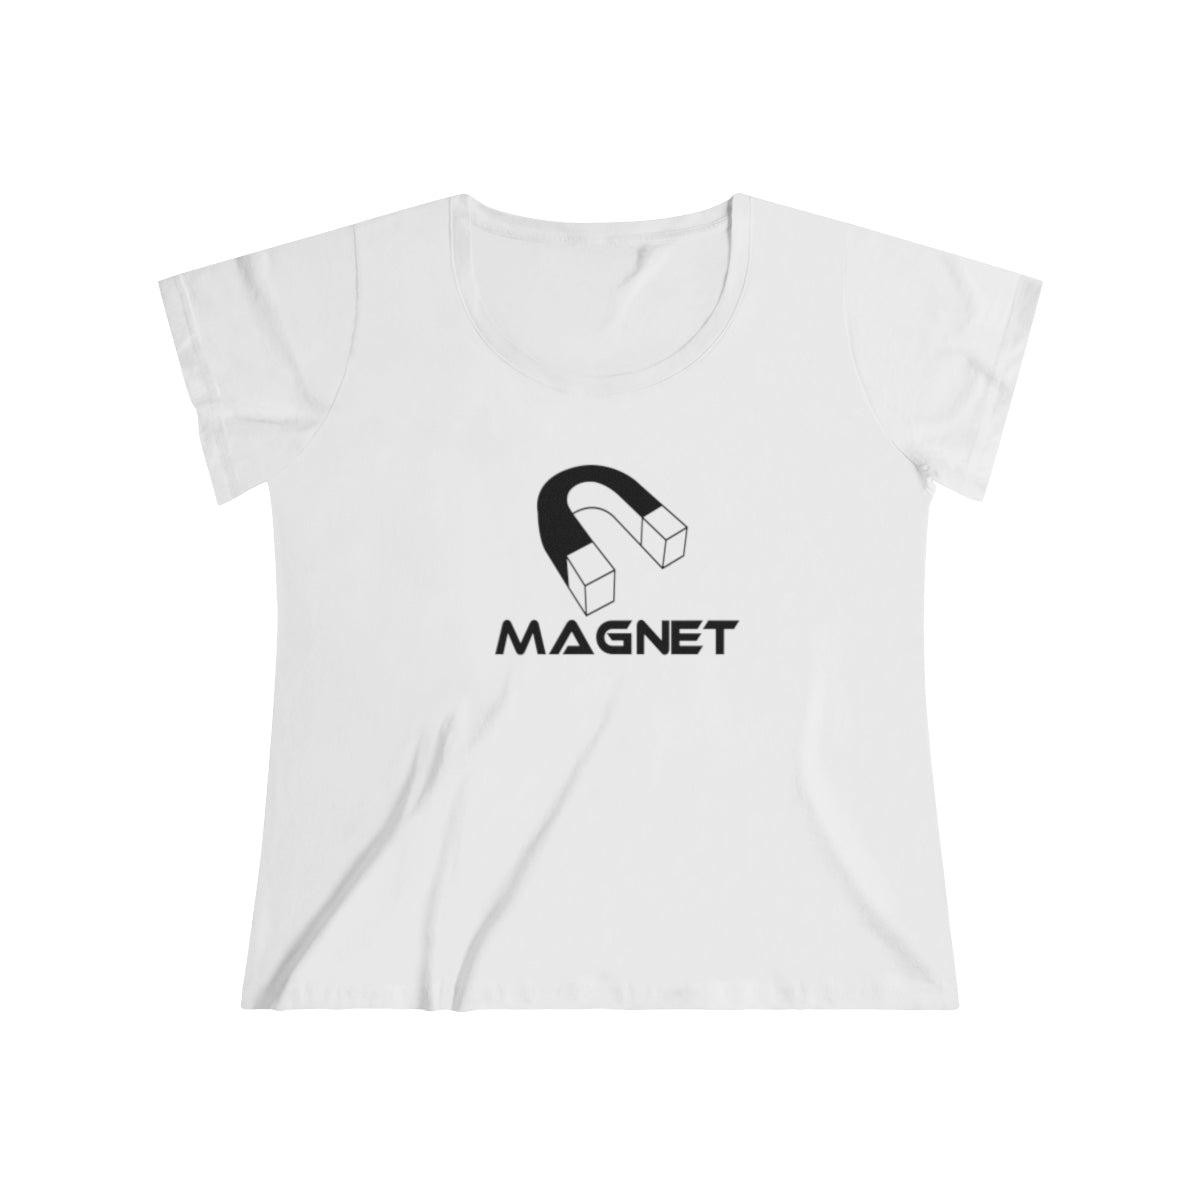 Magnet Women's Curvy Tee.